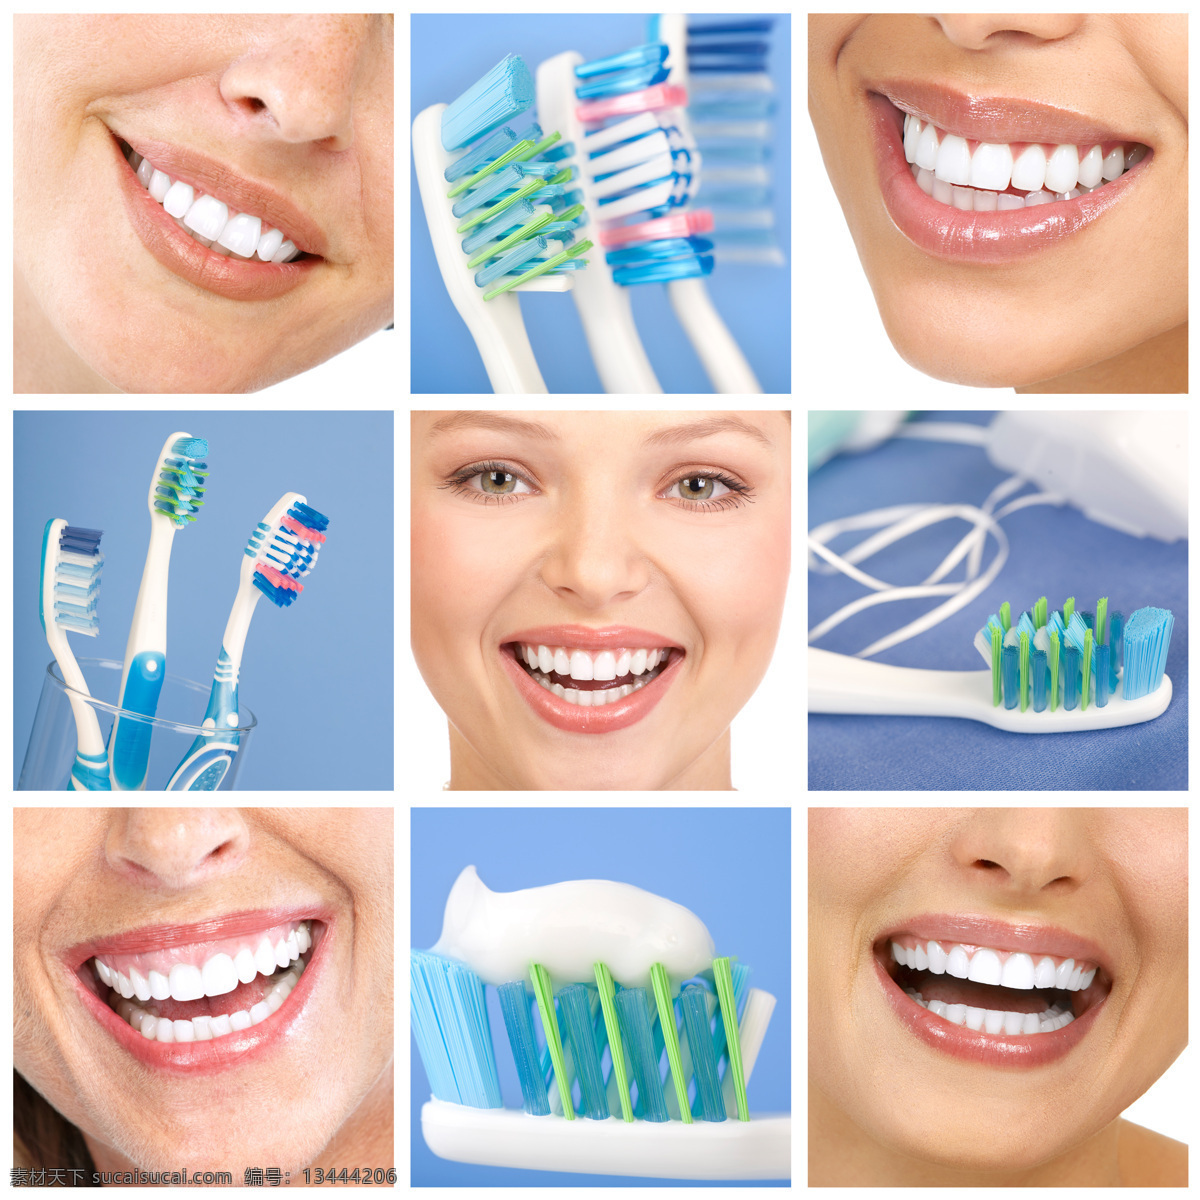 笑脸 牙刷 牙膏 牙齿 牙科 人体器官图 人物图片